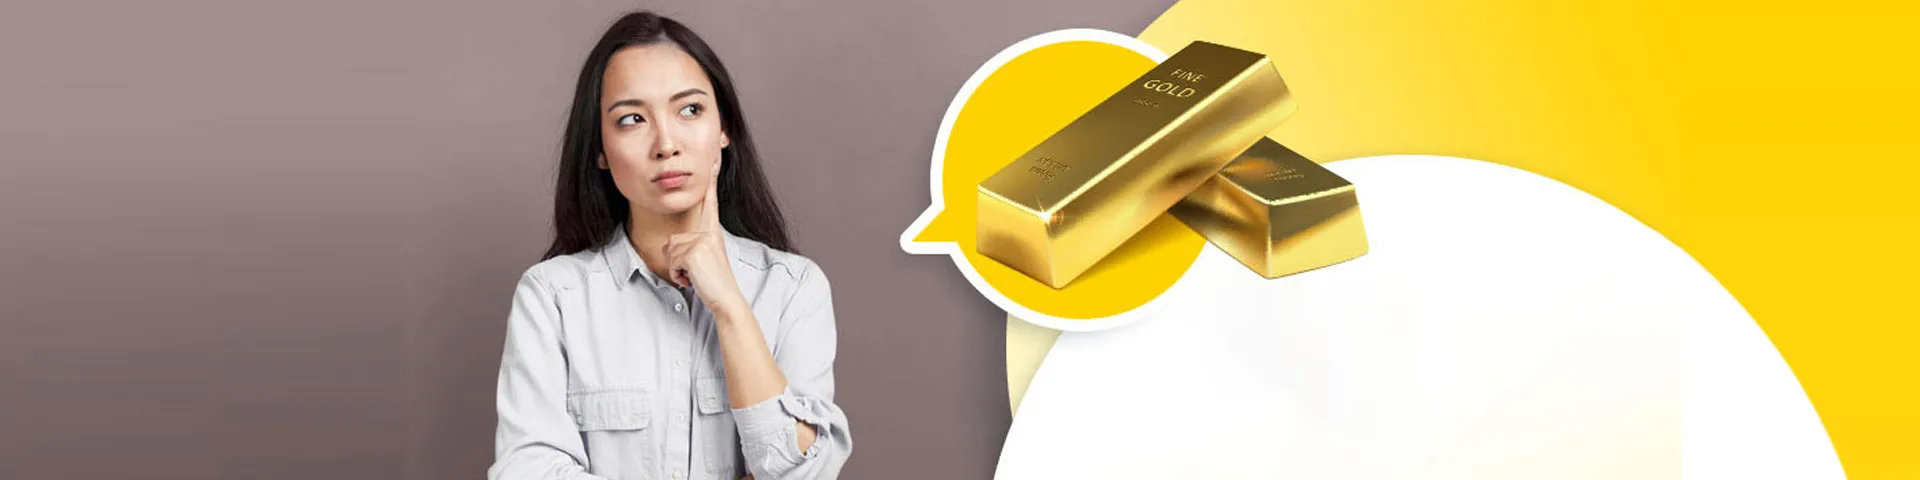 เจาะลึกประเด็น “การลงทุนทองคำ” ยังคุ้มค่าแก่การลงทุนอยู่ไหม